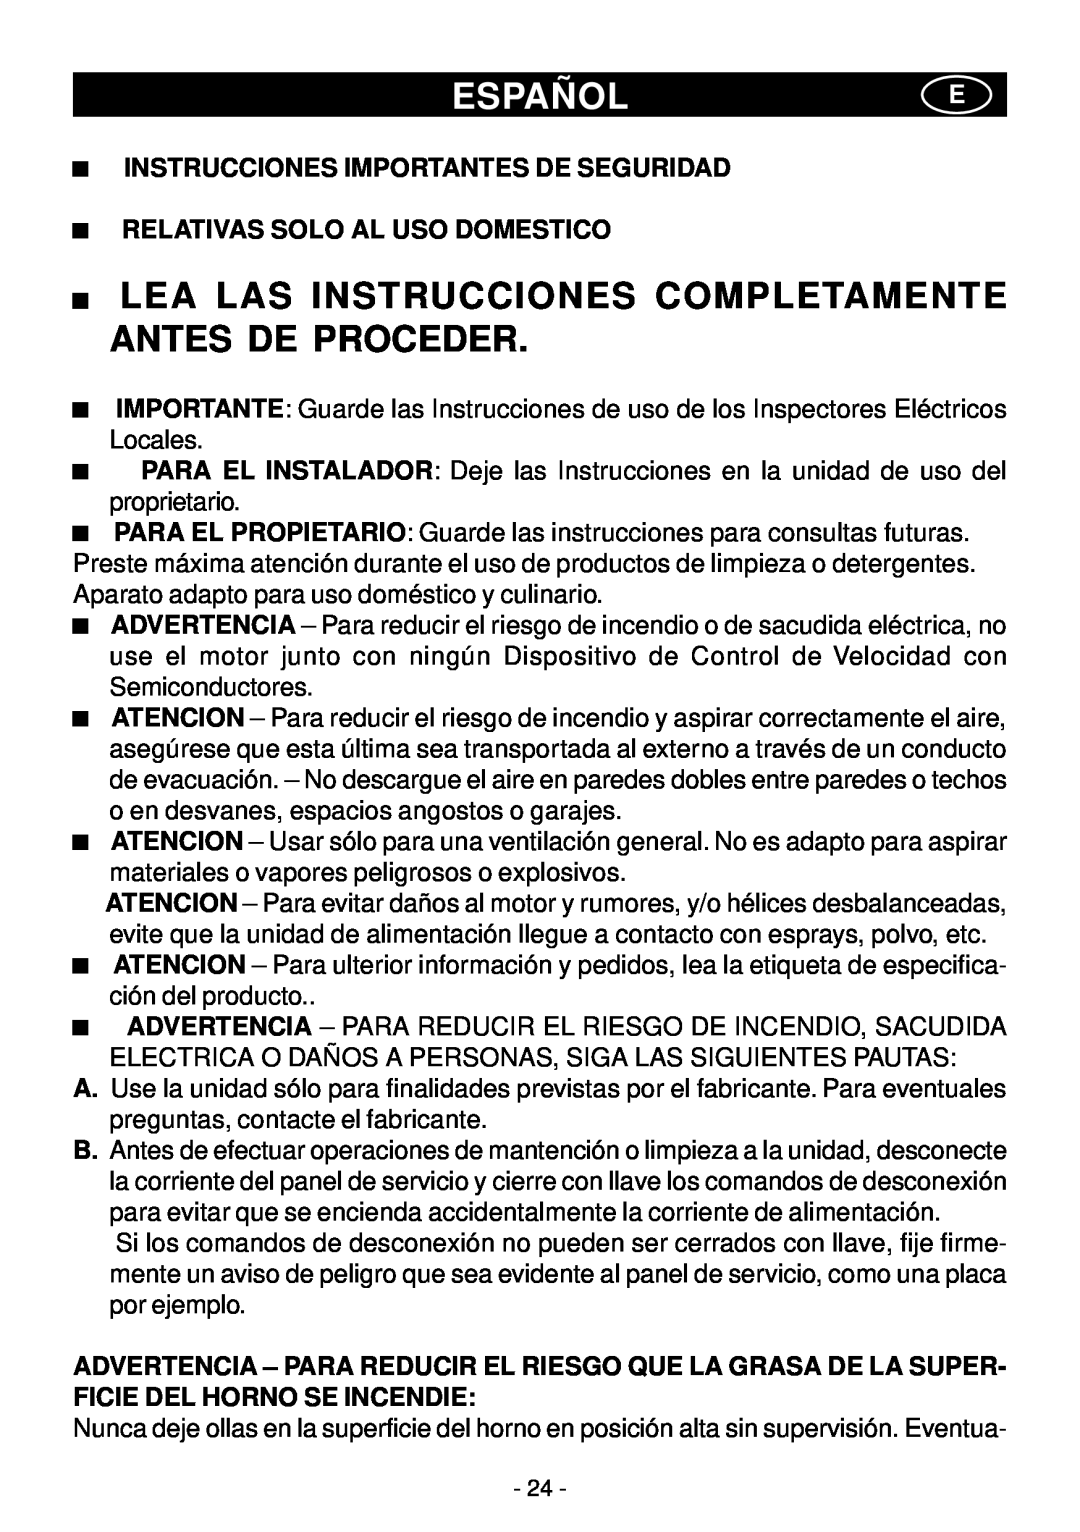 Elitair PN-I manual Españole, Lea Las Instrucciones Completamente Antes De Proceder, Instrucciones Importantes De Seguridad 